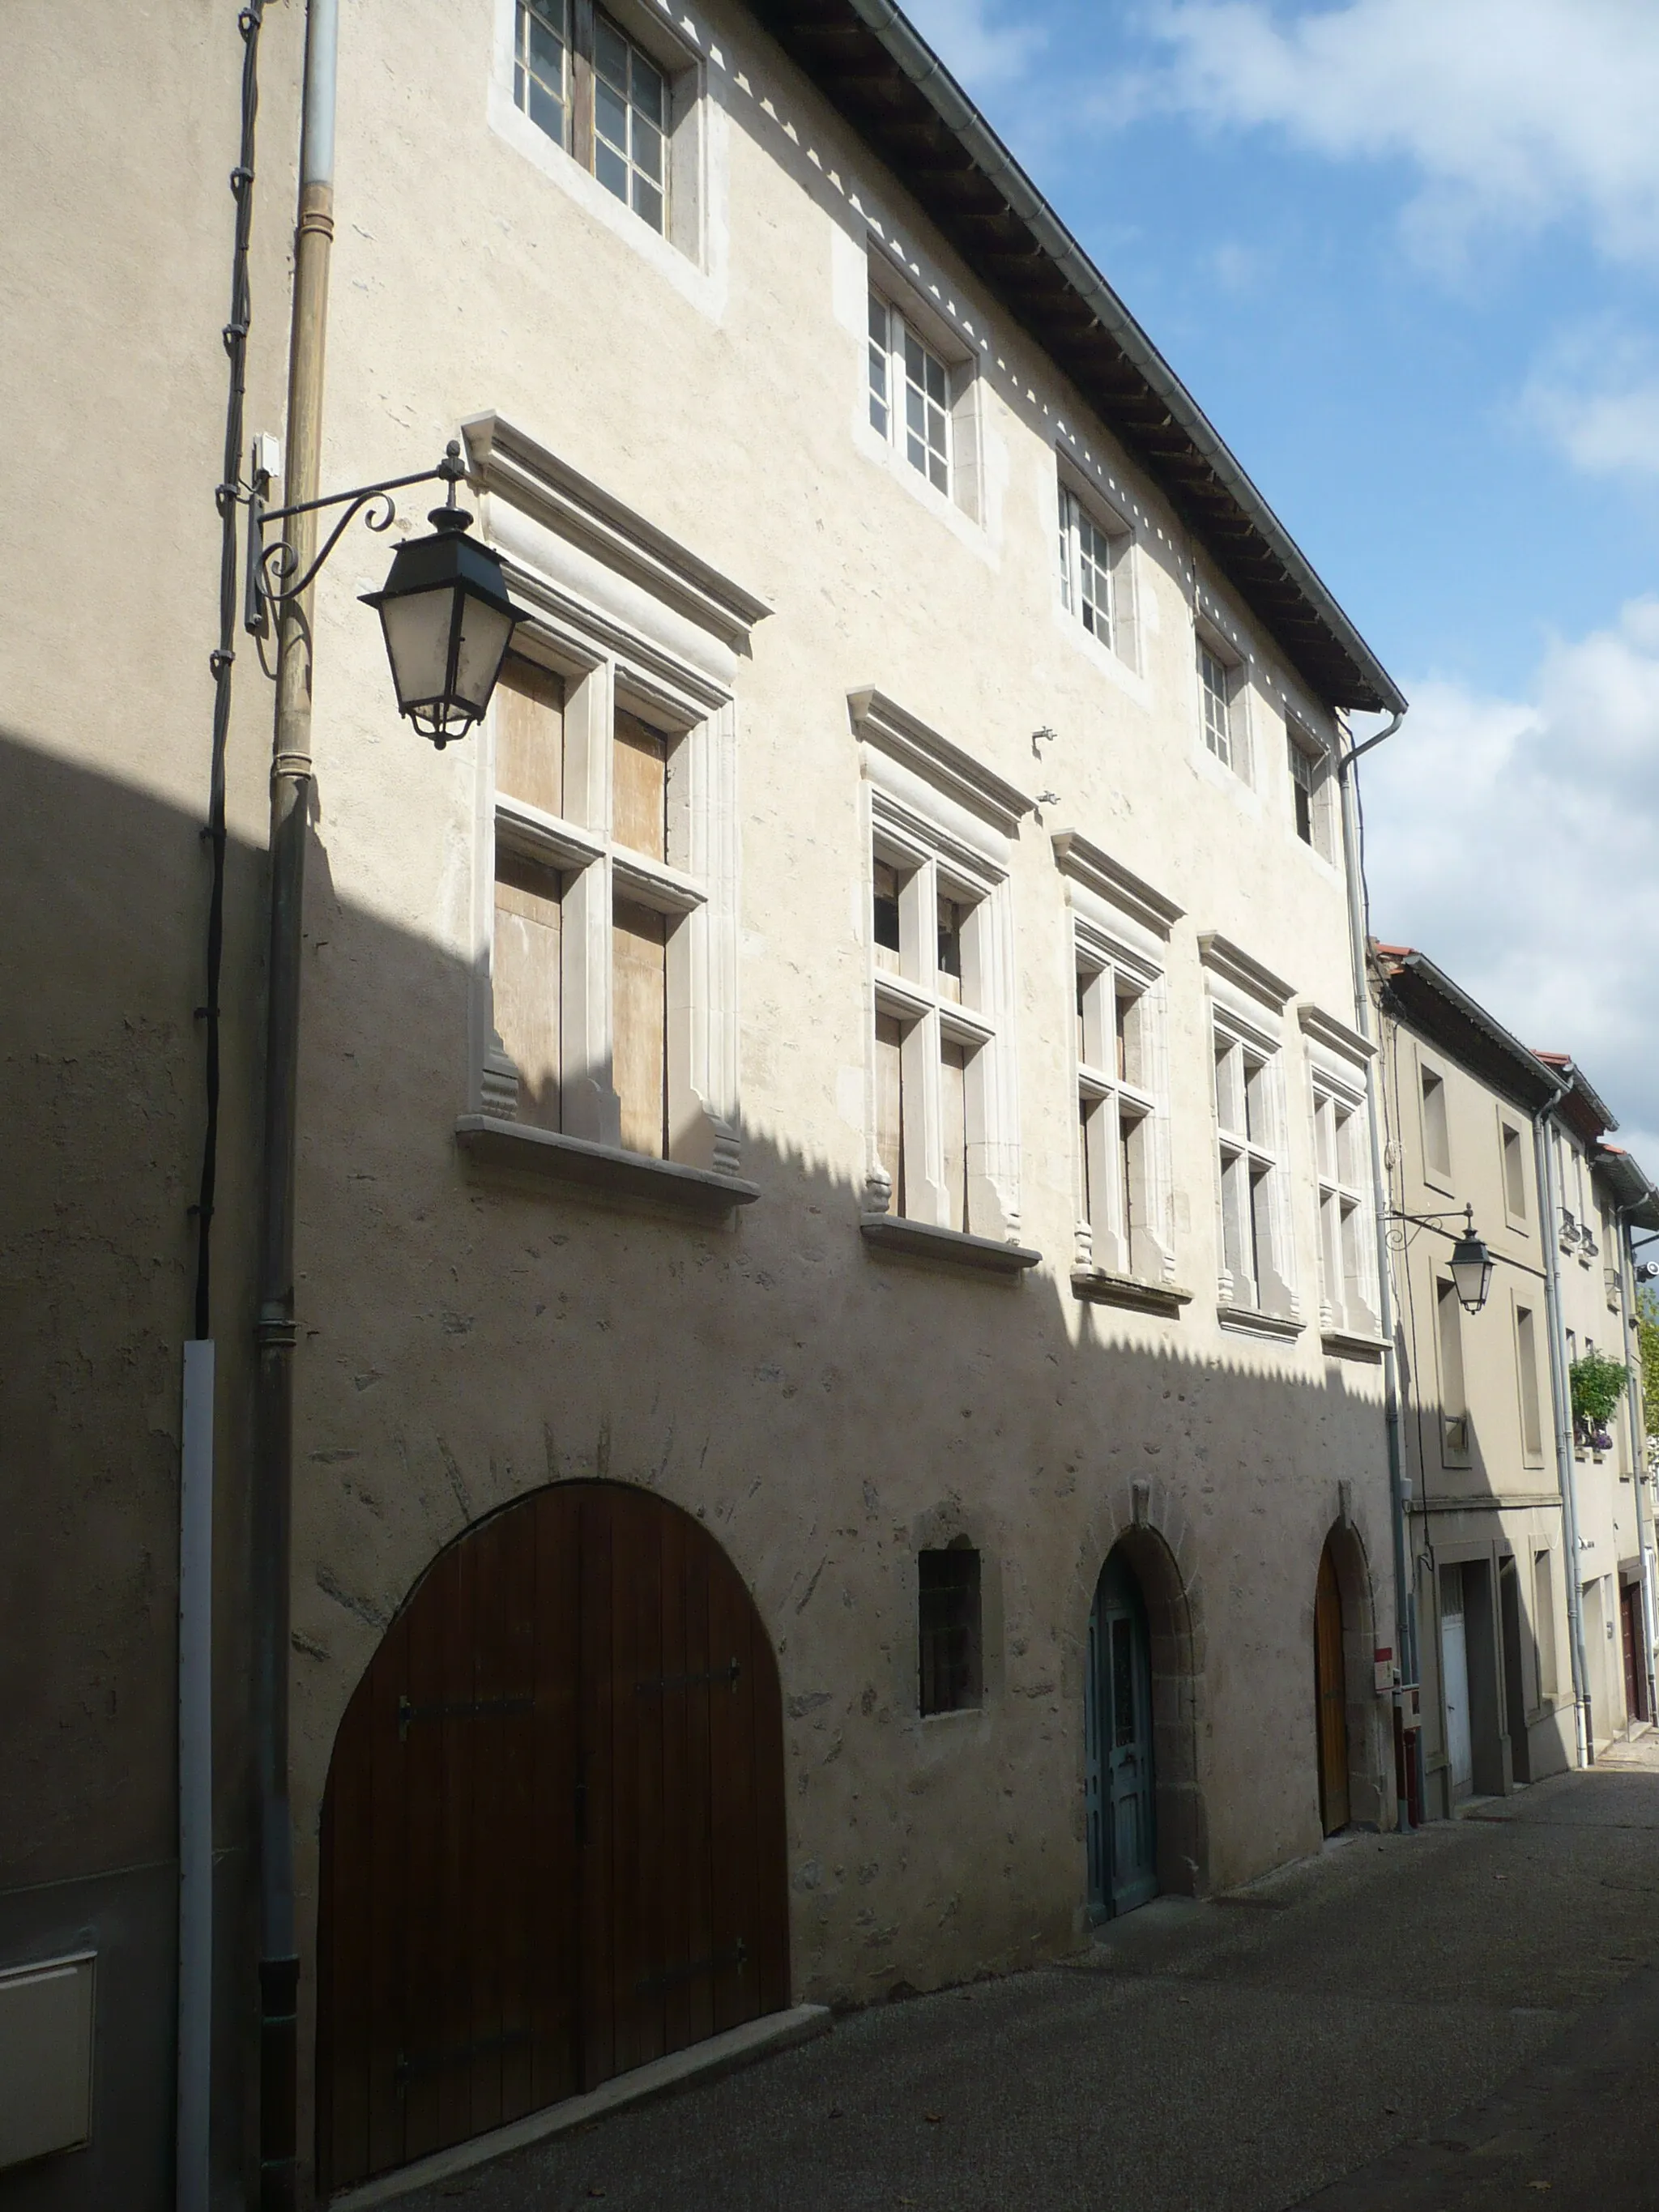 Photo showing: Bâtiment ayant servi de caserne, de gendarmerie puis d'hôtel de Ville du XVIe et XVIIe siècle sur la commune de Saint-Amans-Soult dans le département français du Tarn.